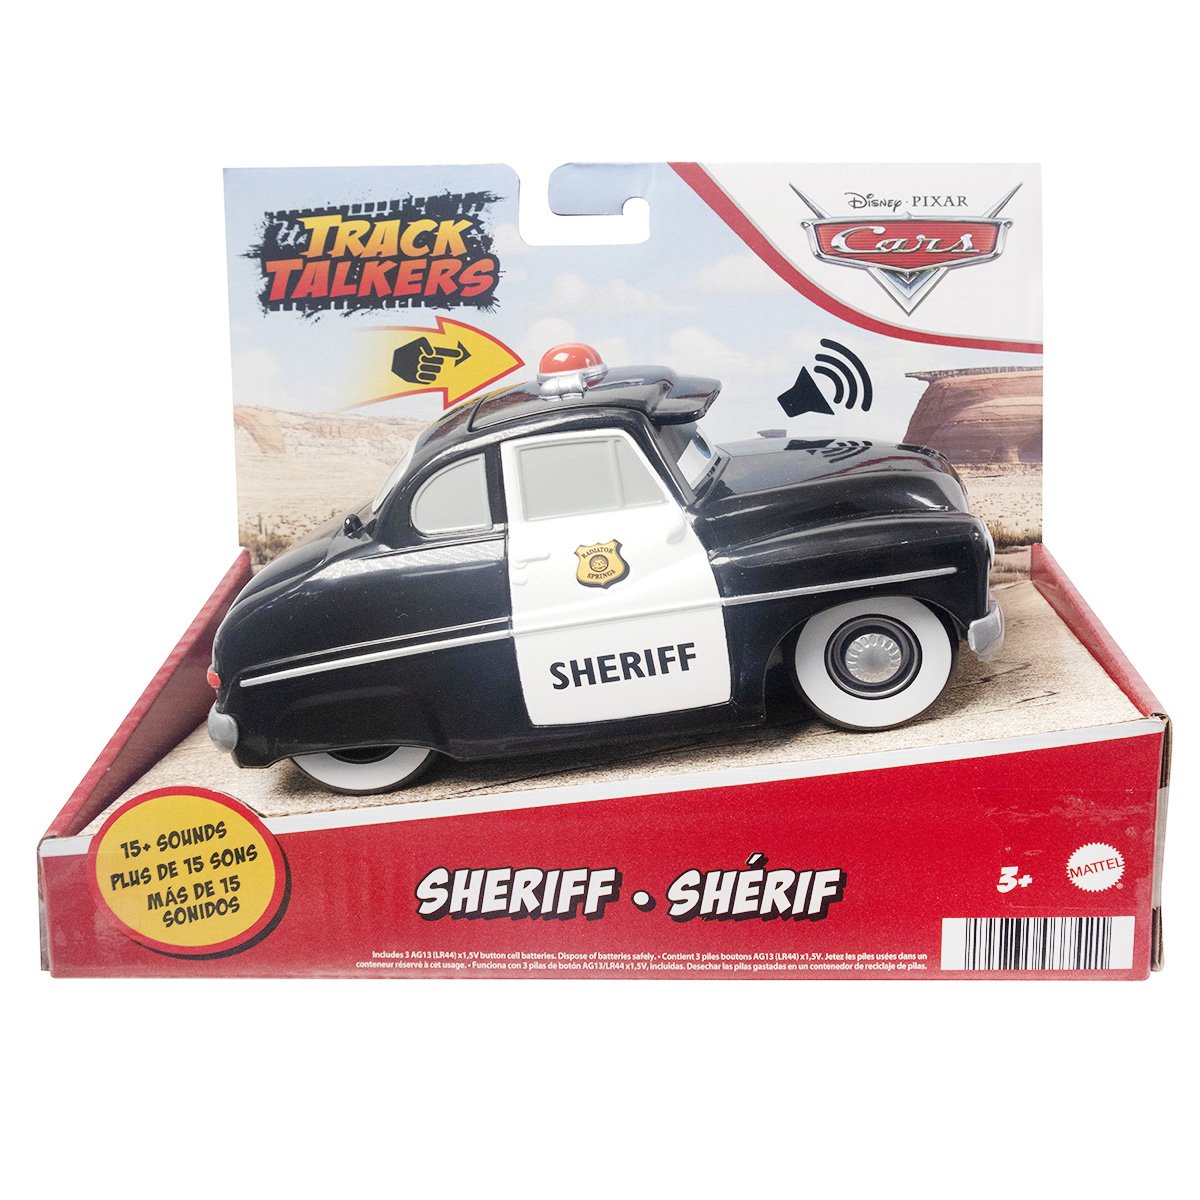 Masinuta cu sunete, Disney Cars, Sheriff, 14 cm, HFC52